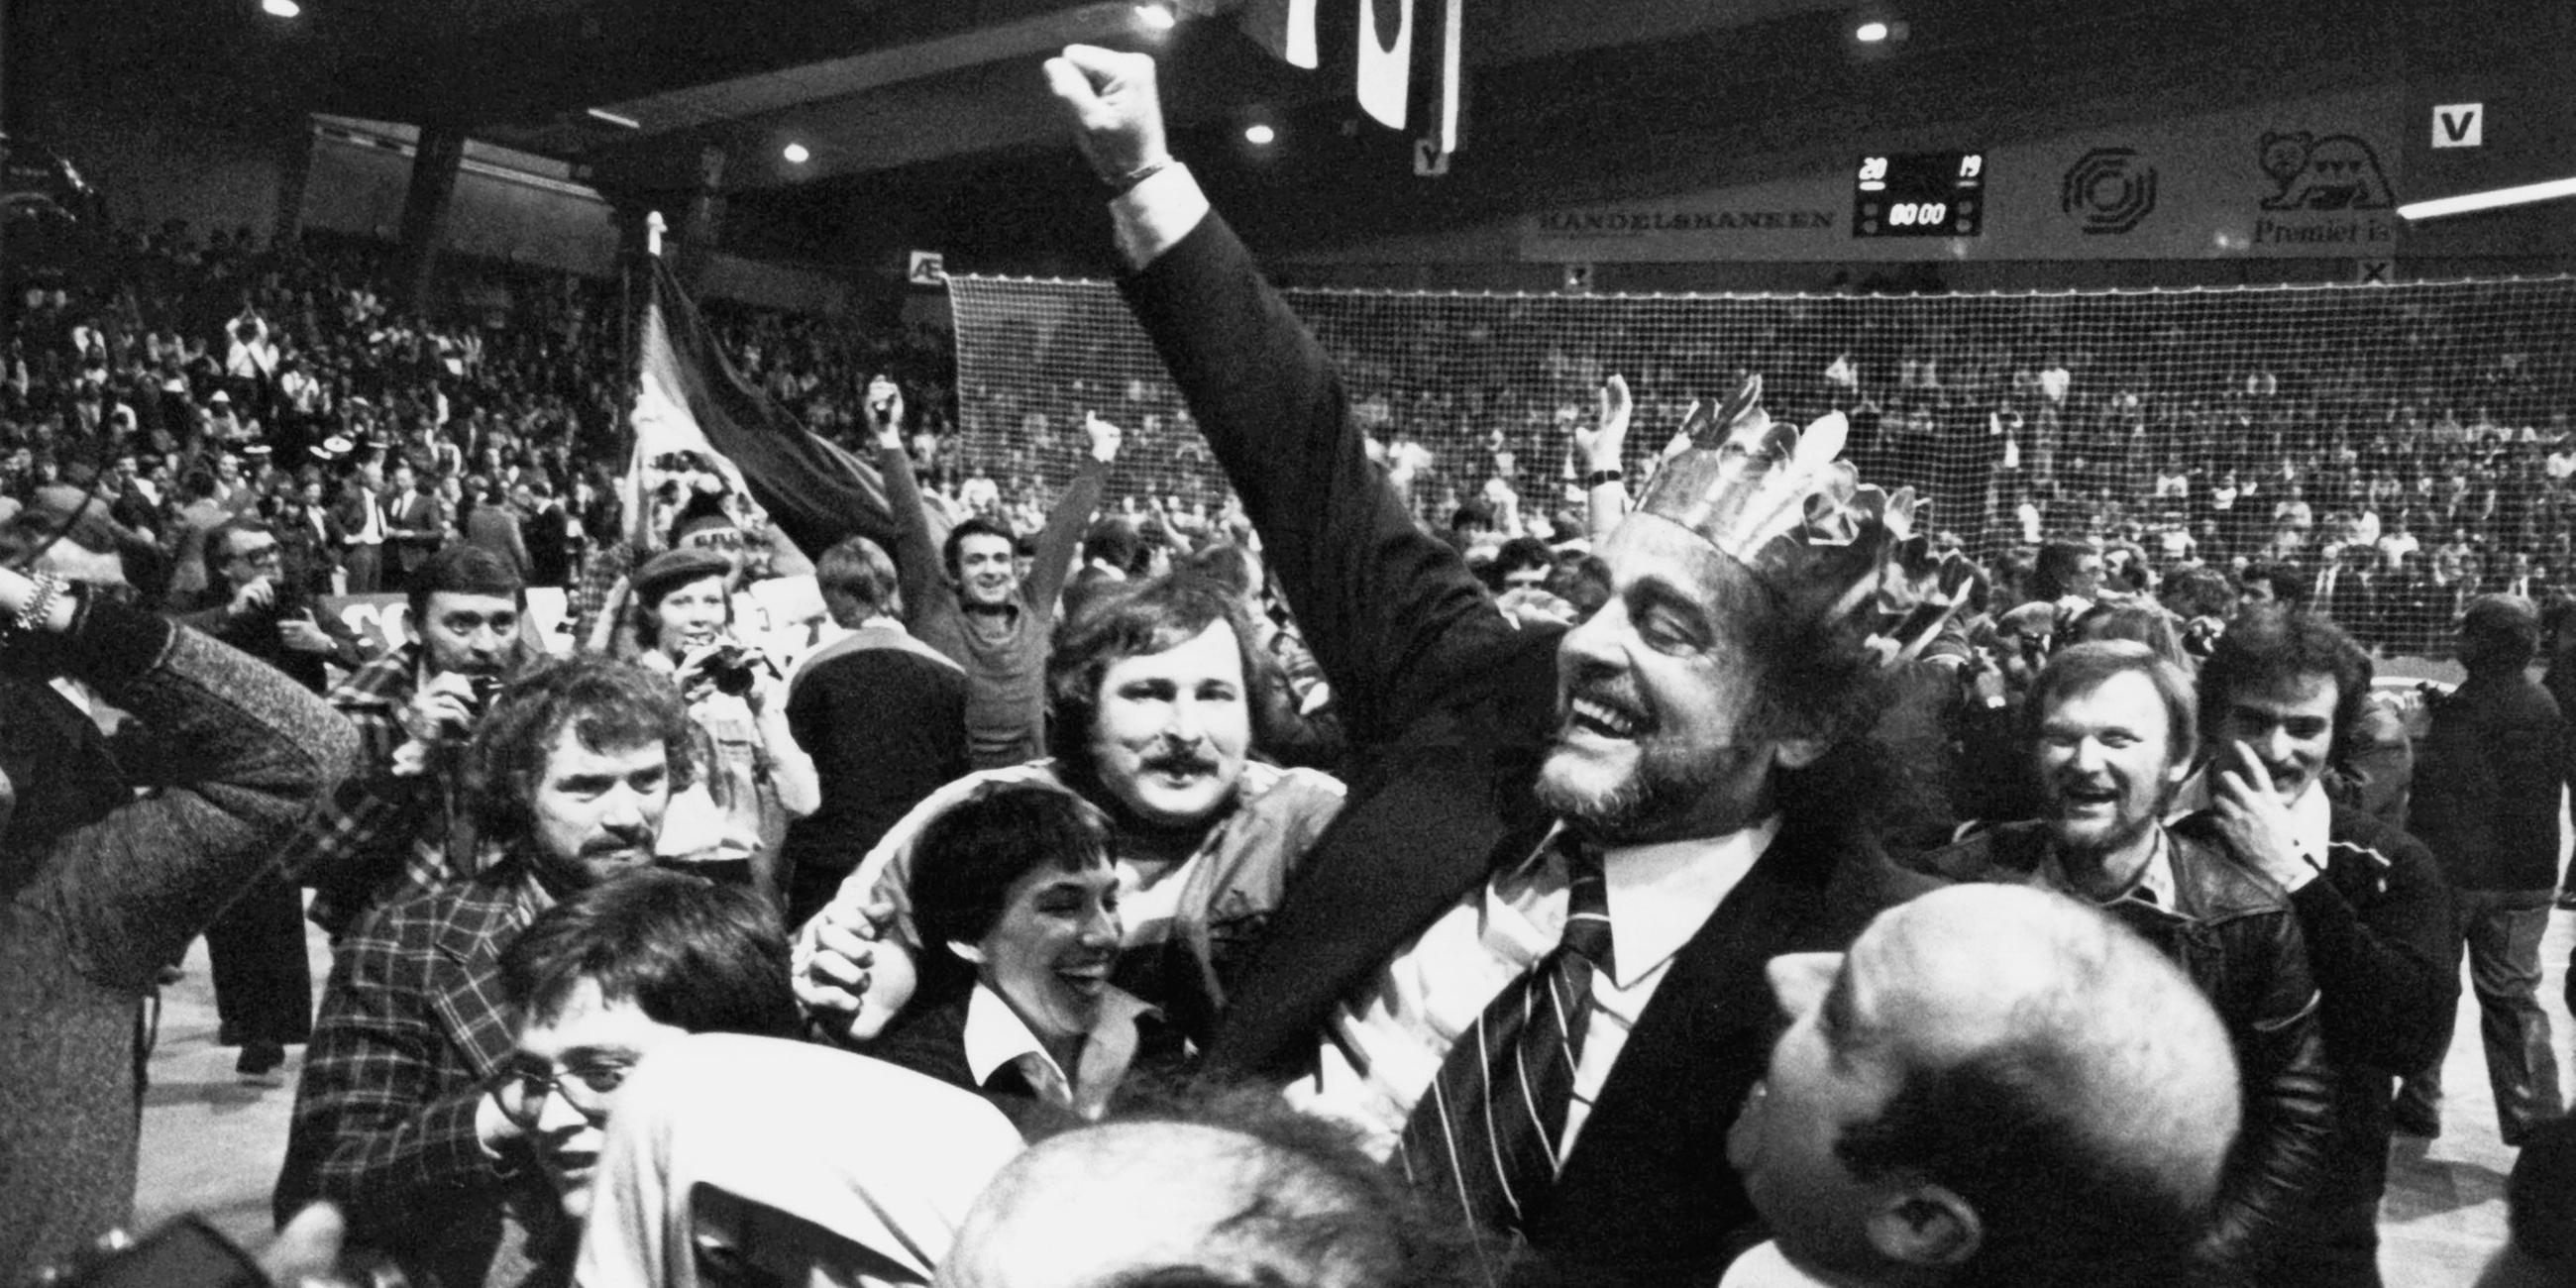 Vlado Stenzel, der jugoslawische Trainer der deutschen Handballnationalmannschaft, trägt lachend eine Krone, jubelt und wird gefeiert am 5.2.1978 in Kopenhagen.